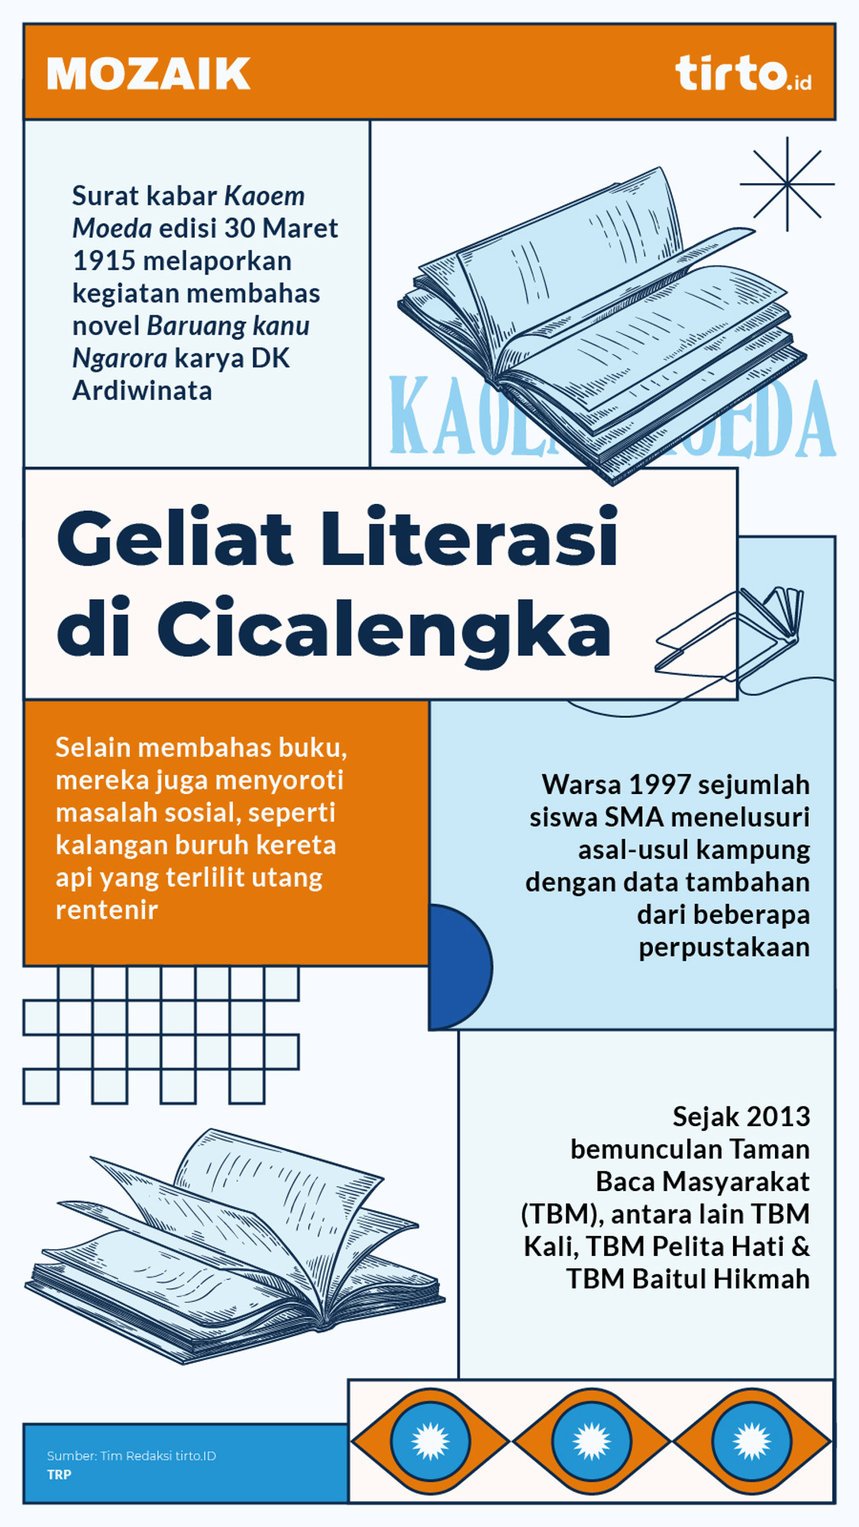 Infografik Mozaik Geliat Literasi di Cicalengka